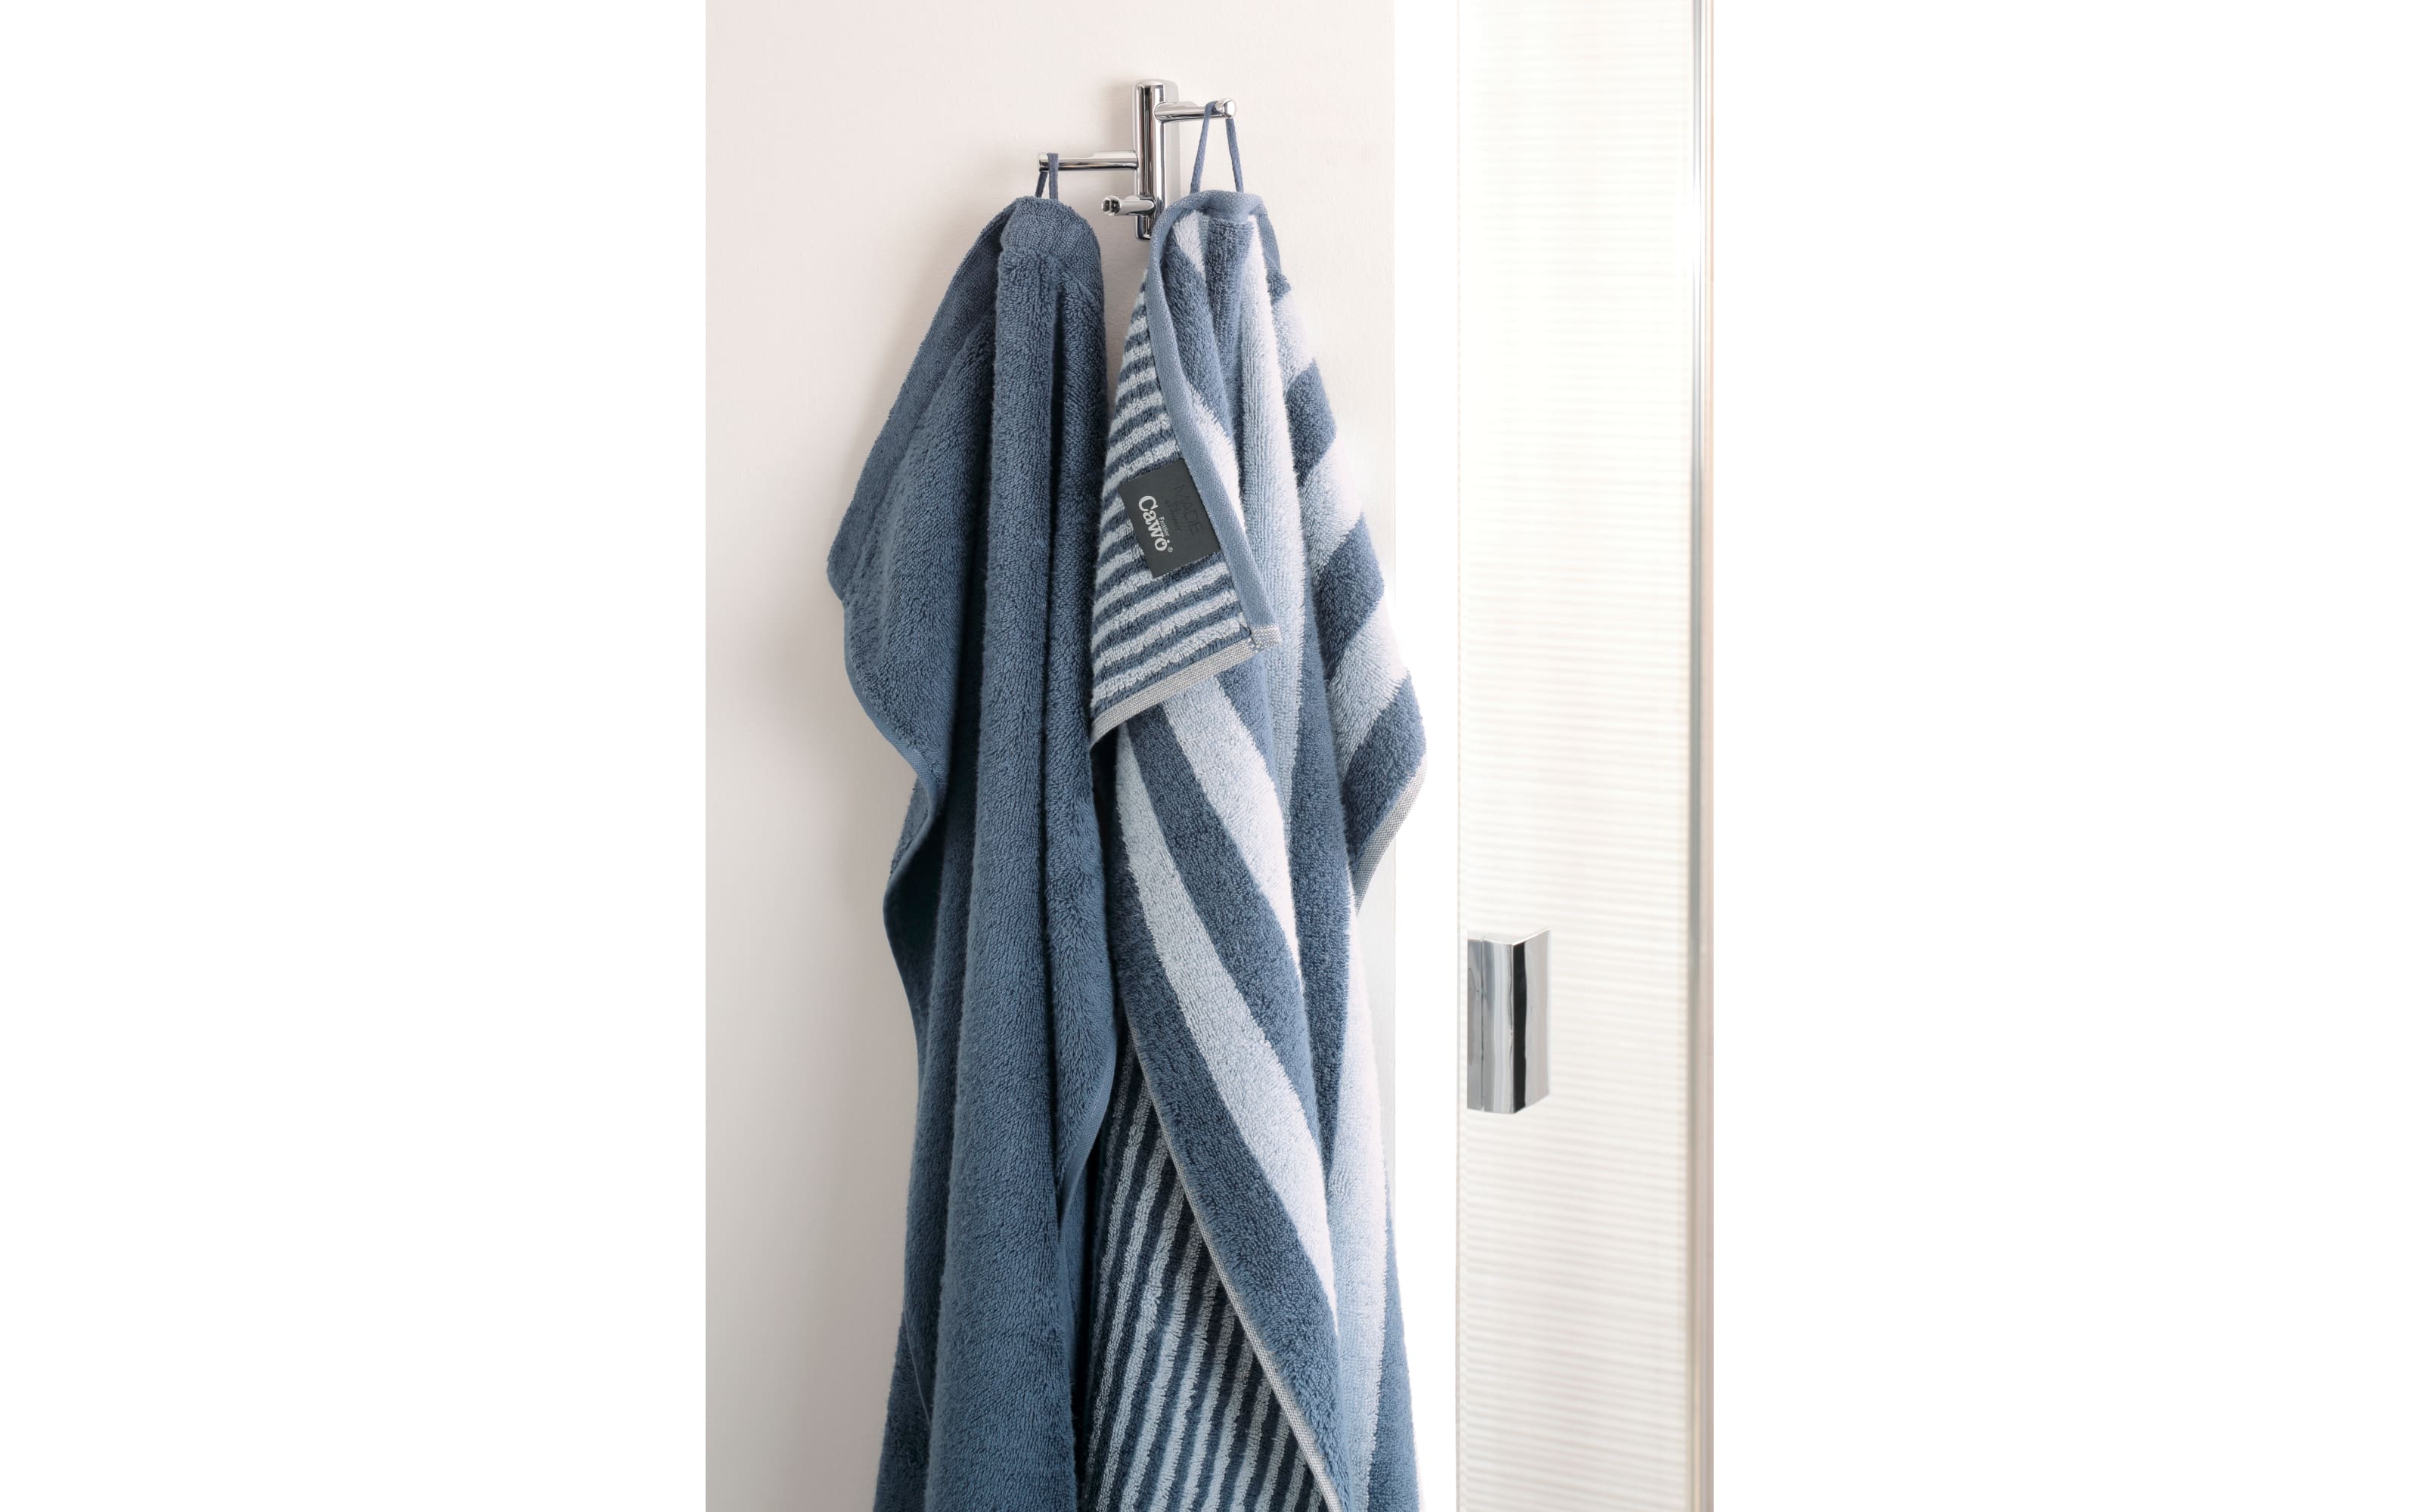 Duschtuch aus Baumwolle in nachtblau, 70 x 140 cm